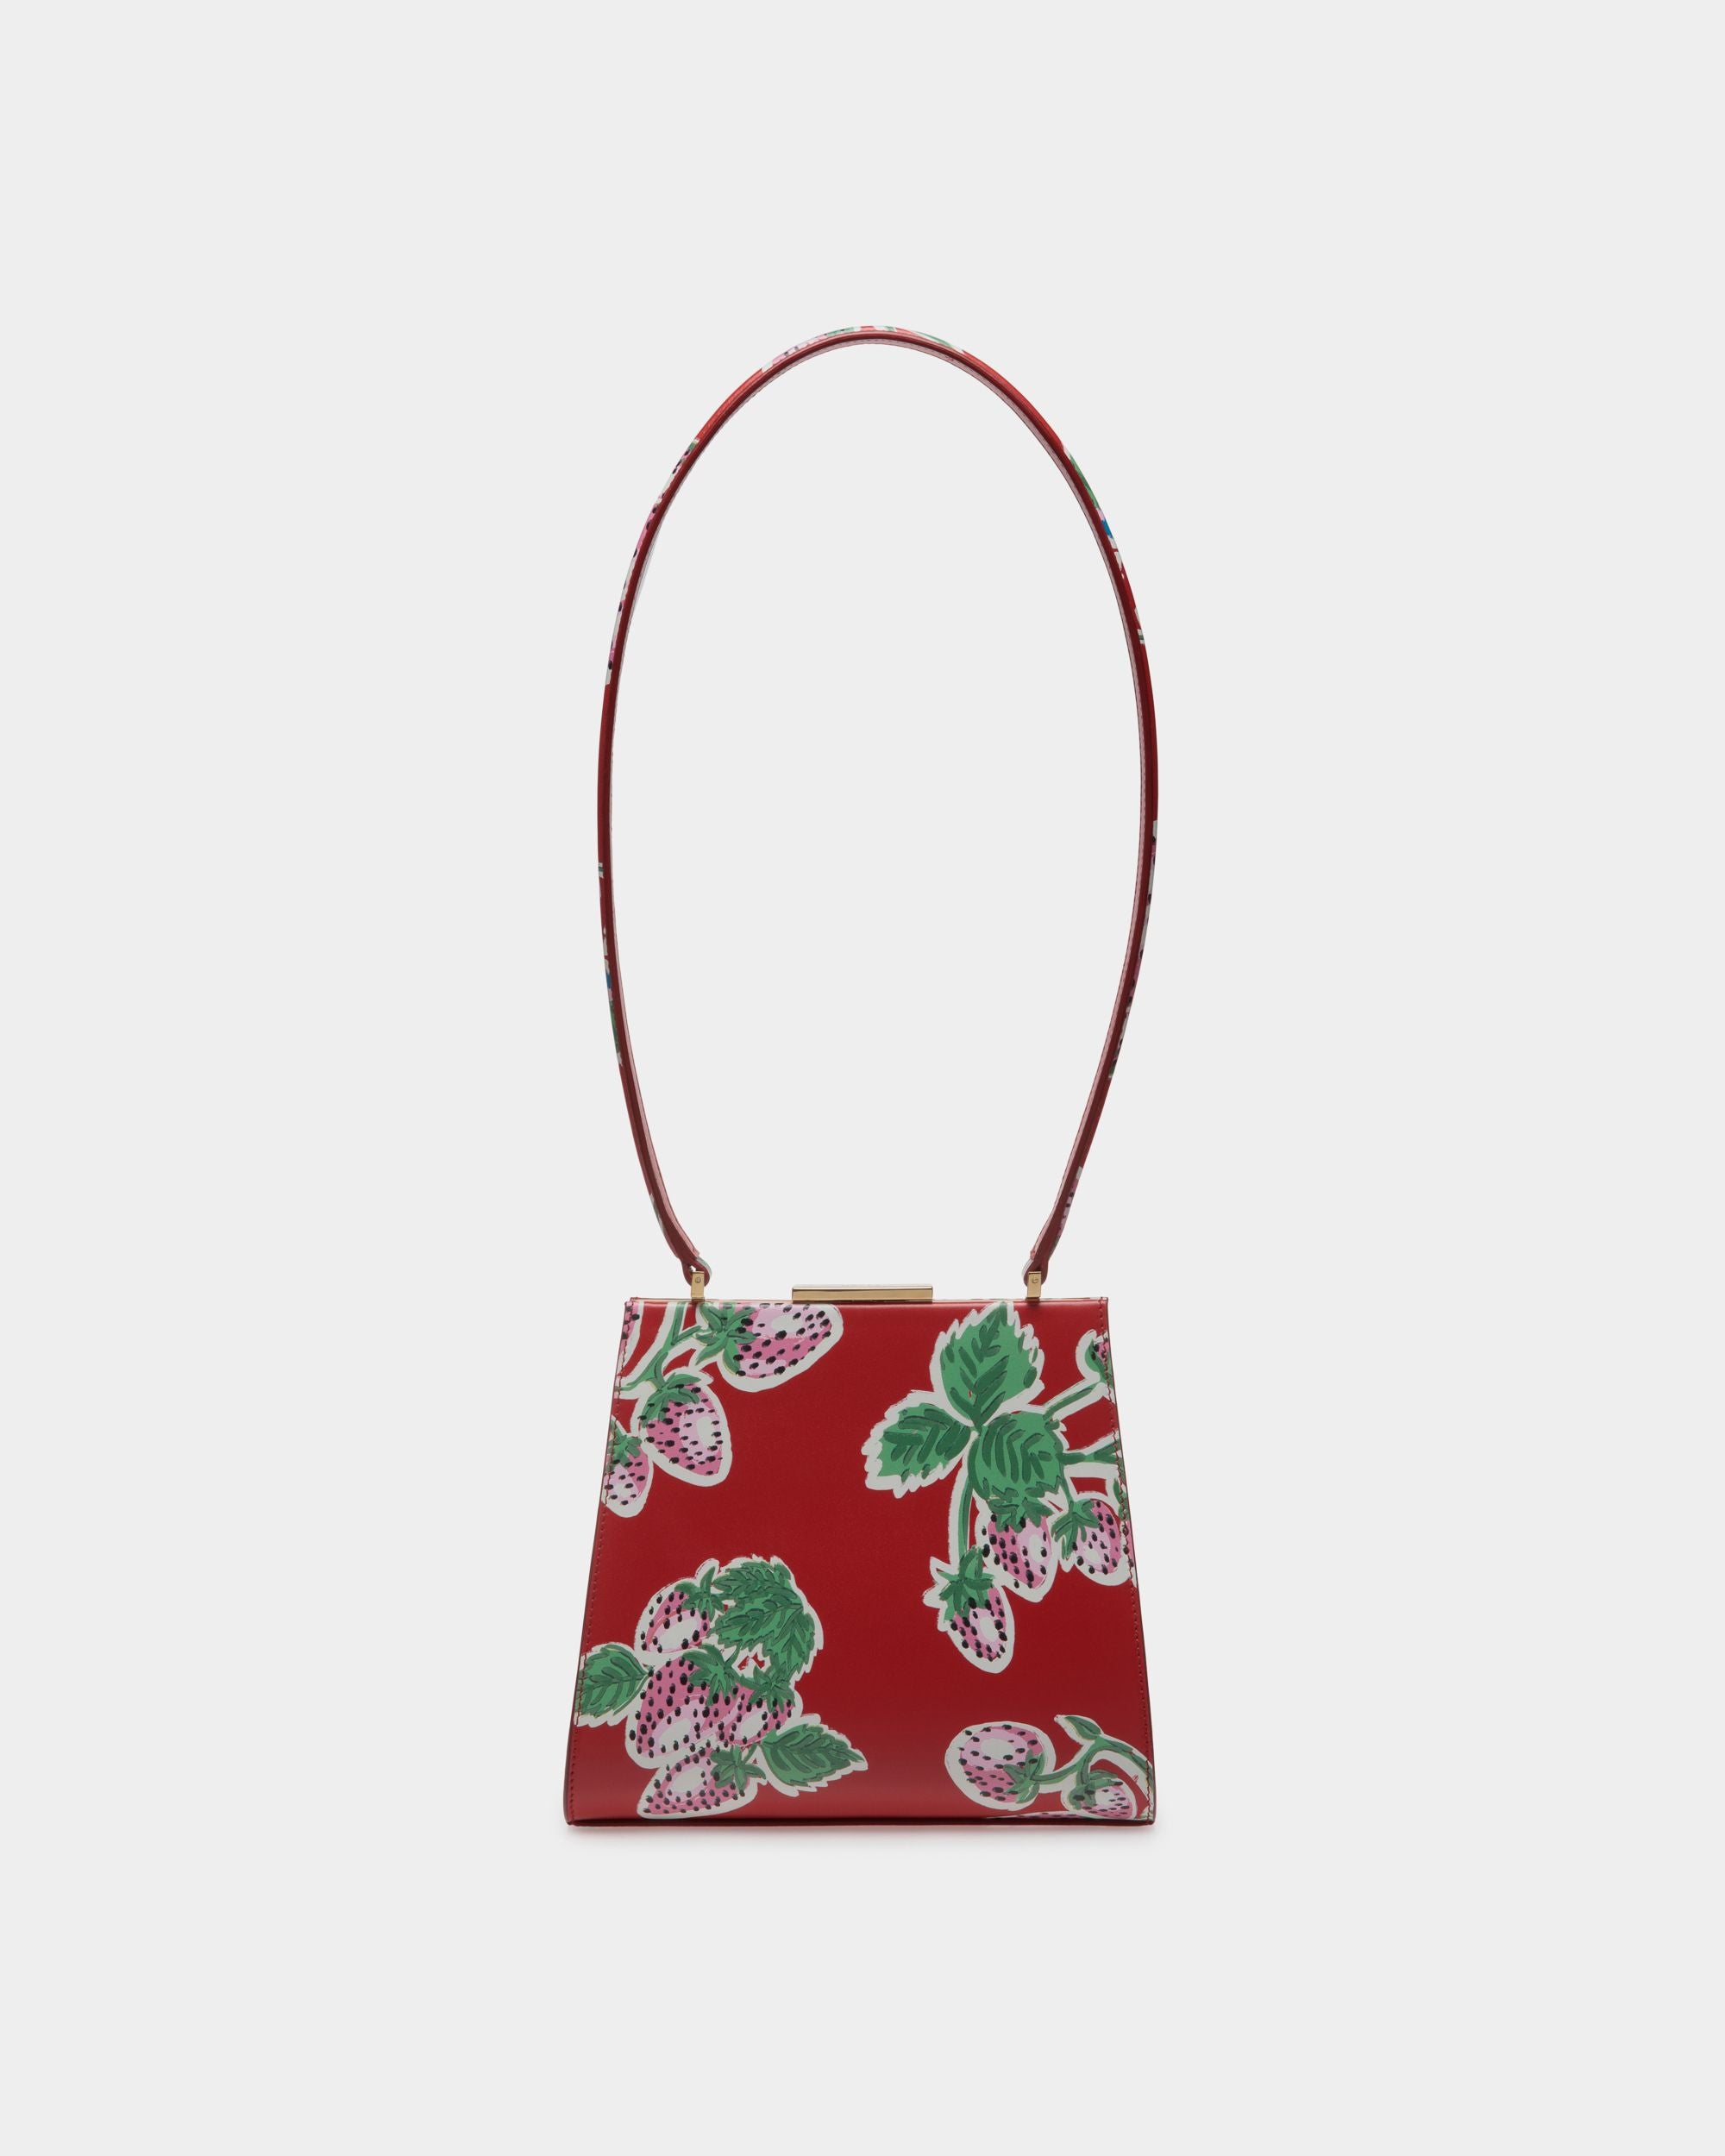 Deco | Bedruckte Schultertasche für Damen aus Leder in Strawberry | Bally | Still Life Vorderseite